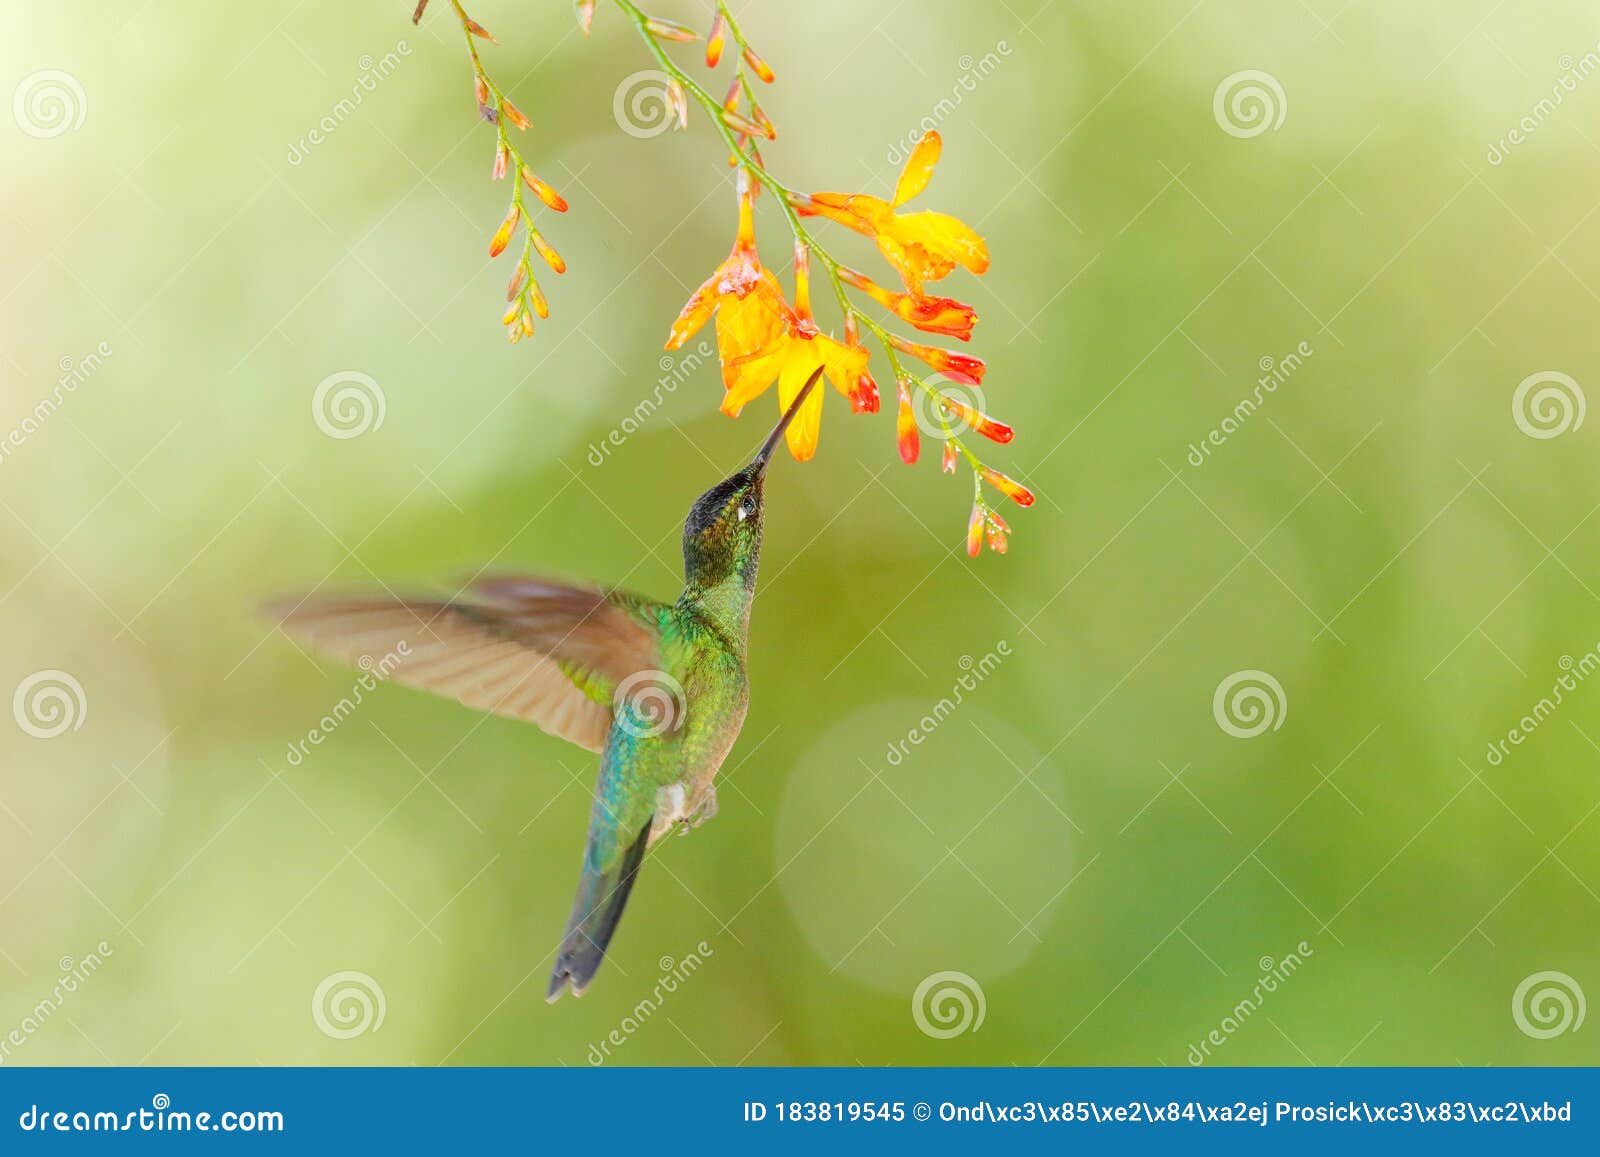 bird with flower. talamanca hummingbird, eugenes spectabilis, in nature, ecuador